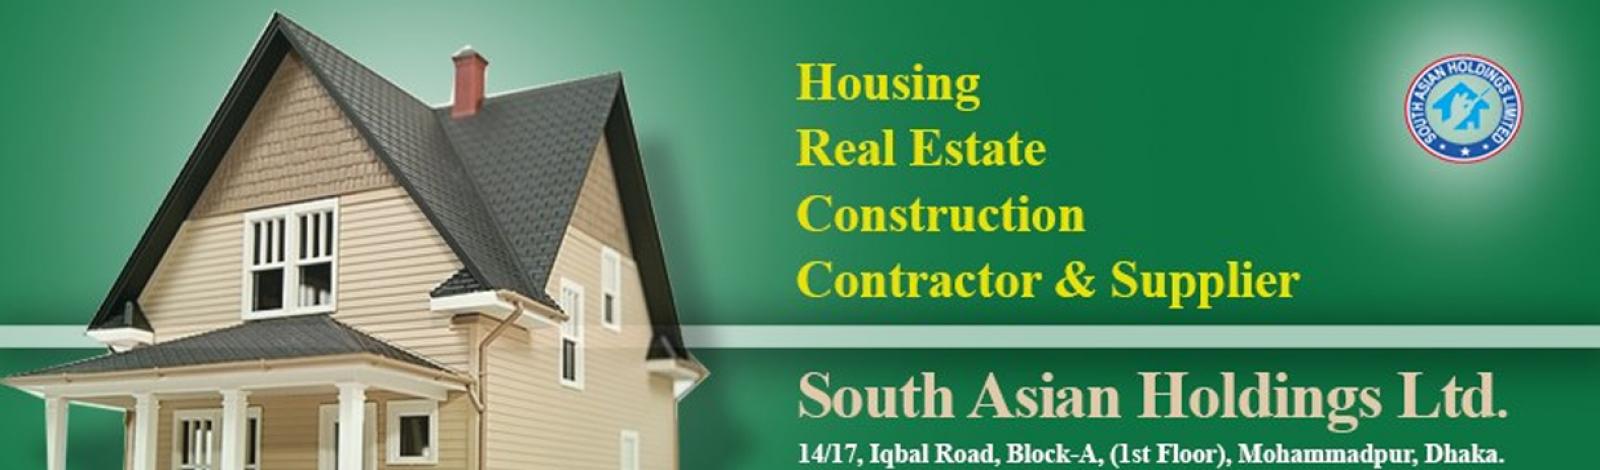 South Asian Holdings Ltd banner